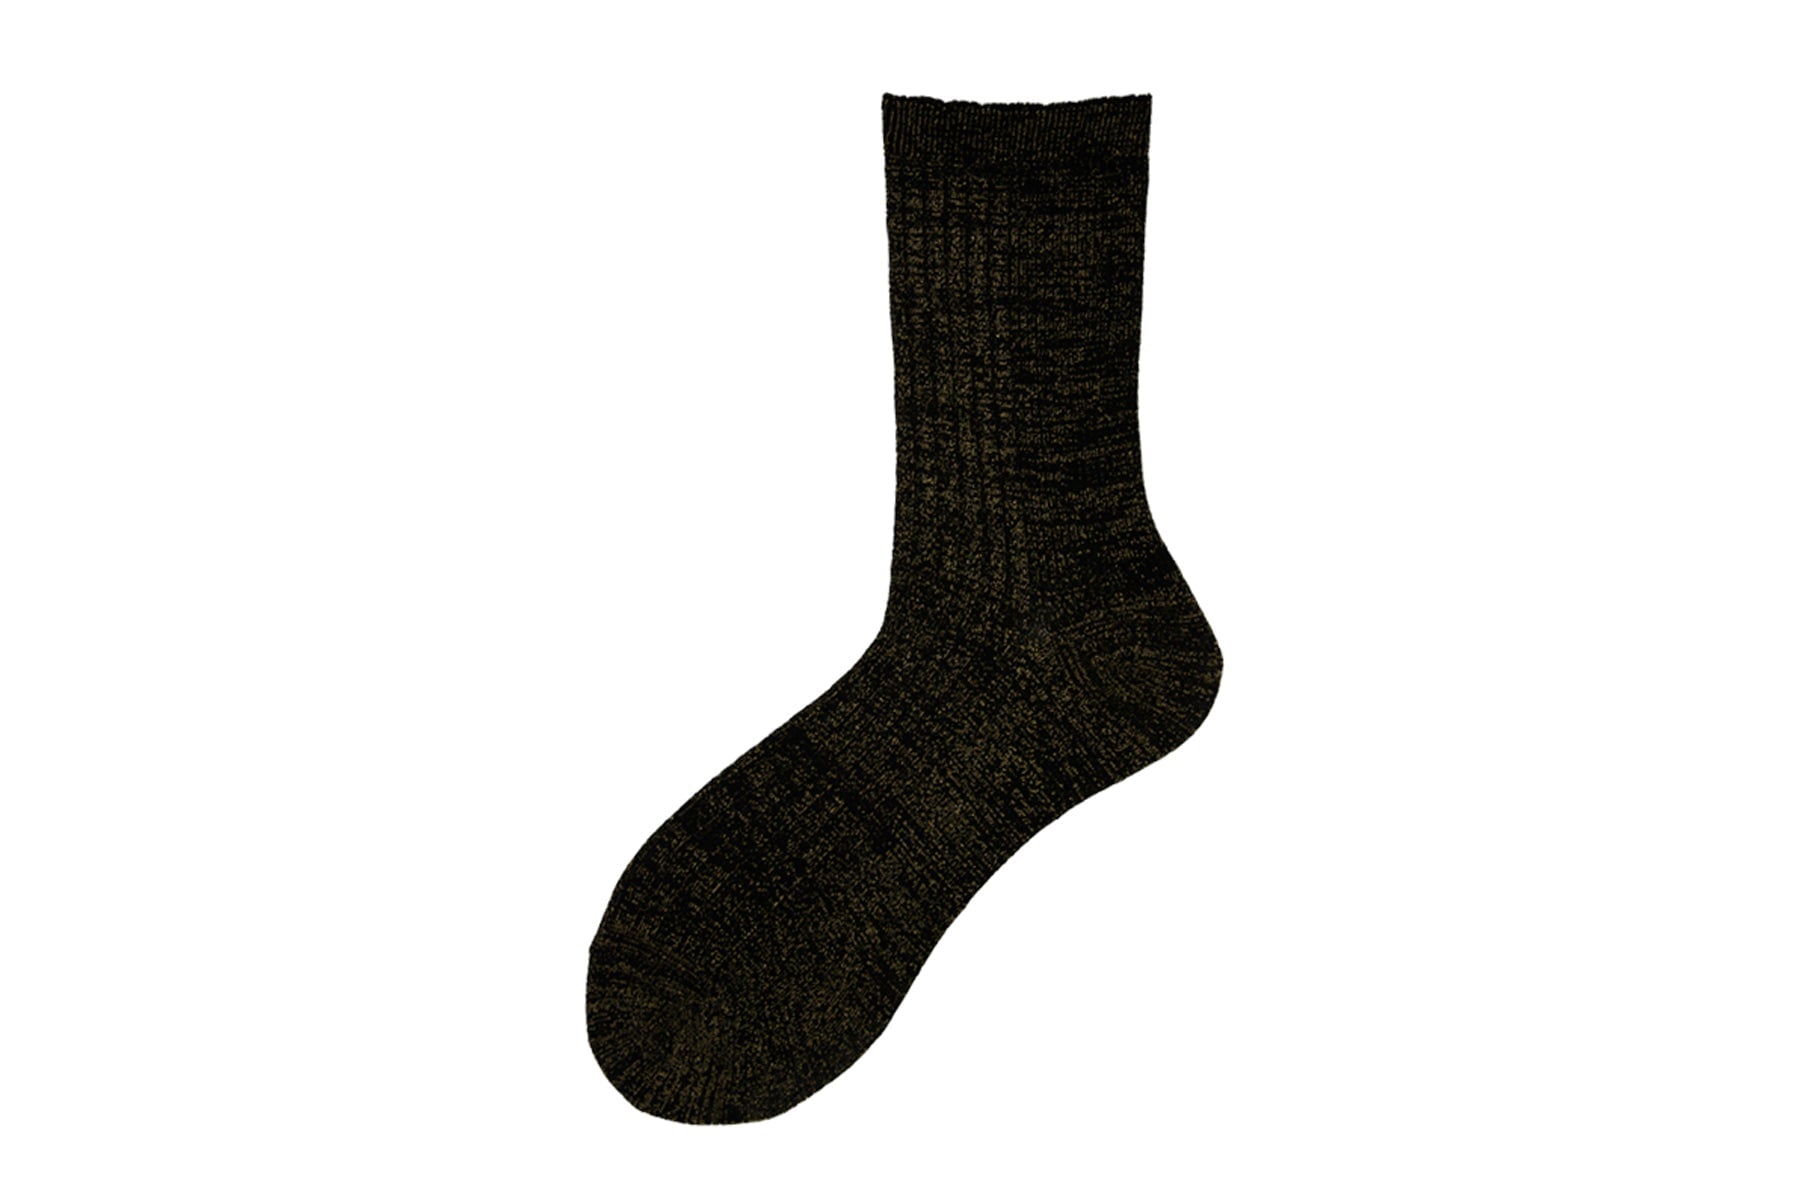 Damen Socken aus Baumwolle in Schwarz mit goldenem Glitzerfaden - N.92 Damen Socken Alto Milano 